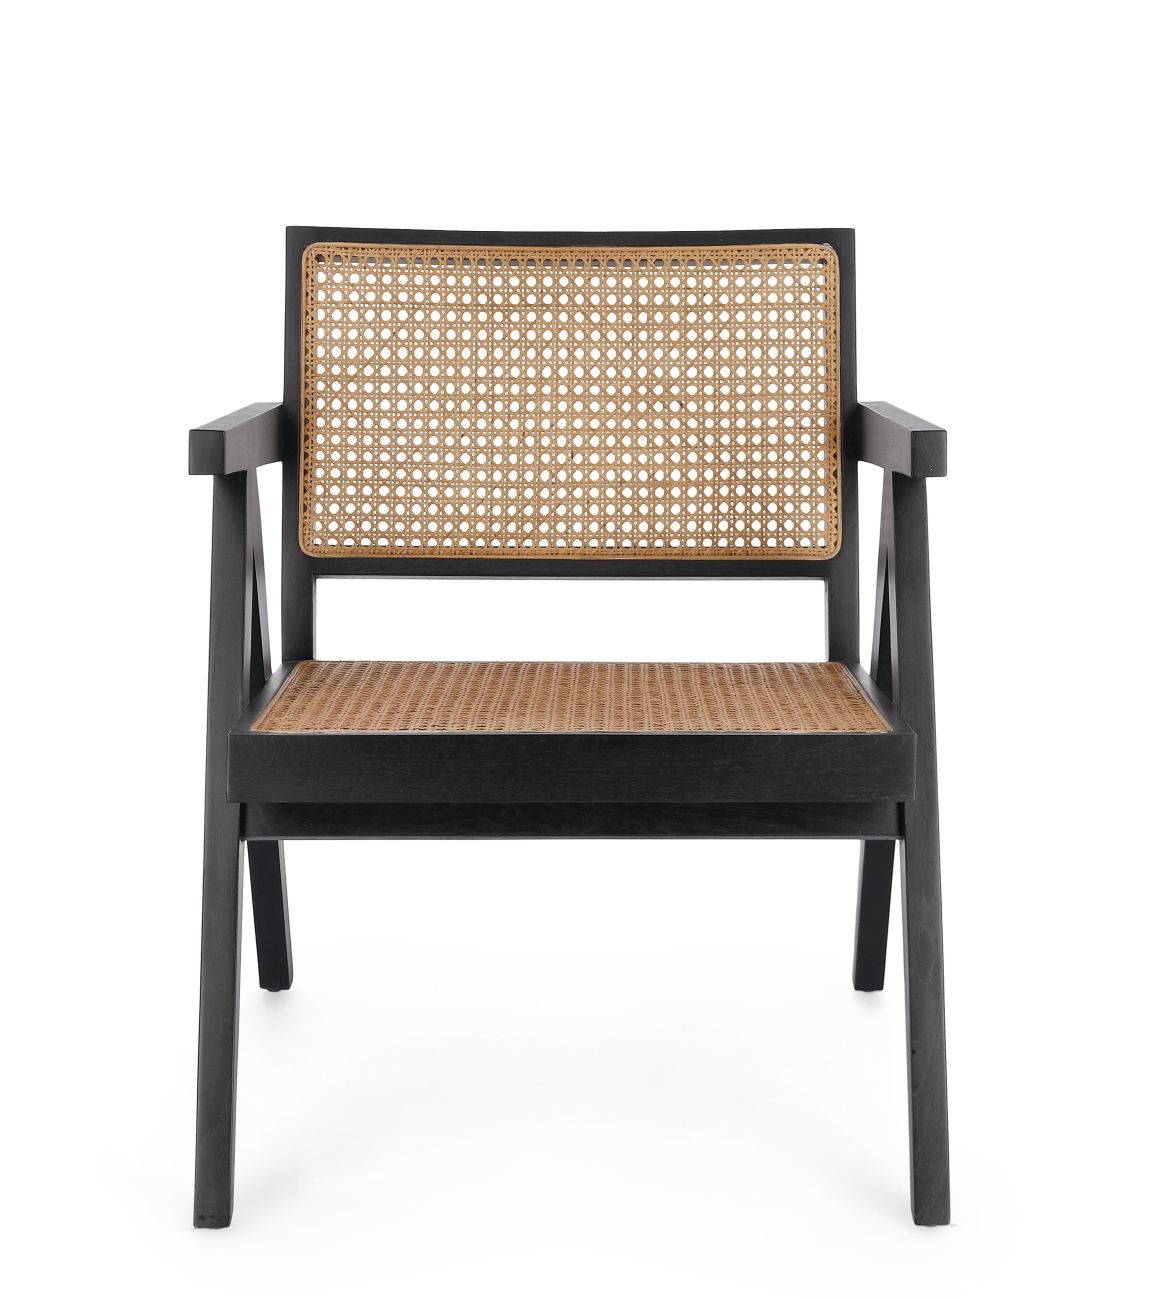 Der Sessel Galia überzeugt mit seinem modernen Stil. Gefertigt wurde er aus Teakholz, welches einen schwarzen Farbton besitzt. Die Rückenlehne ist aus Rattan und hat eine natürliche Farbe. Der Sessel besitzt eine Sitzhöhe von 41 cm.